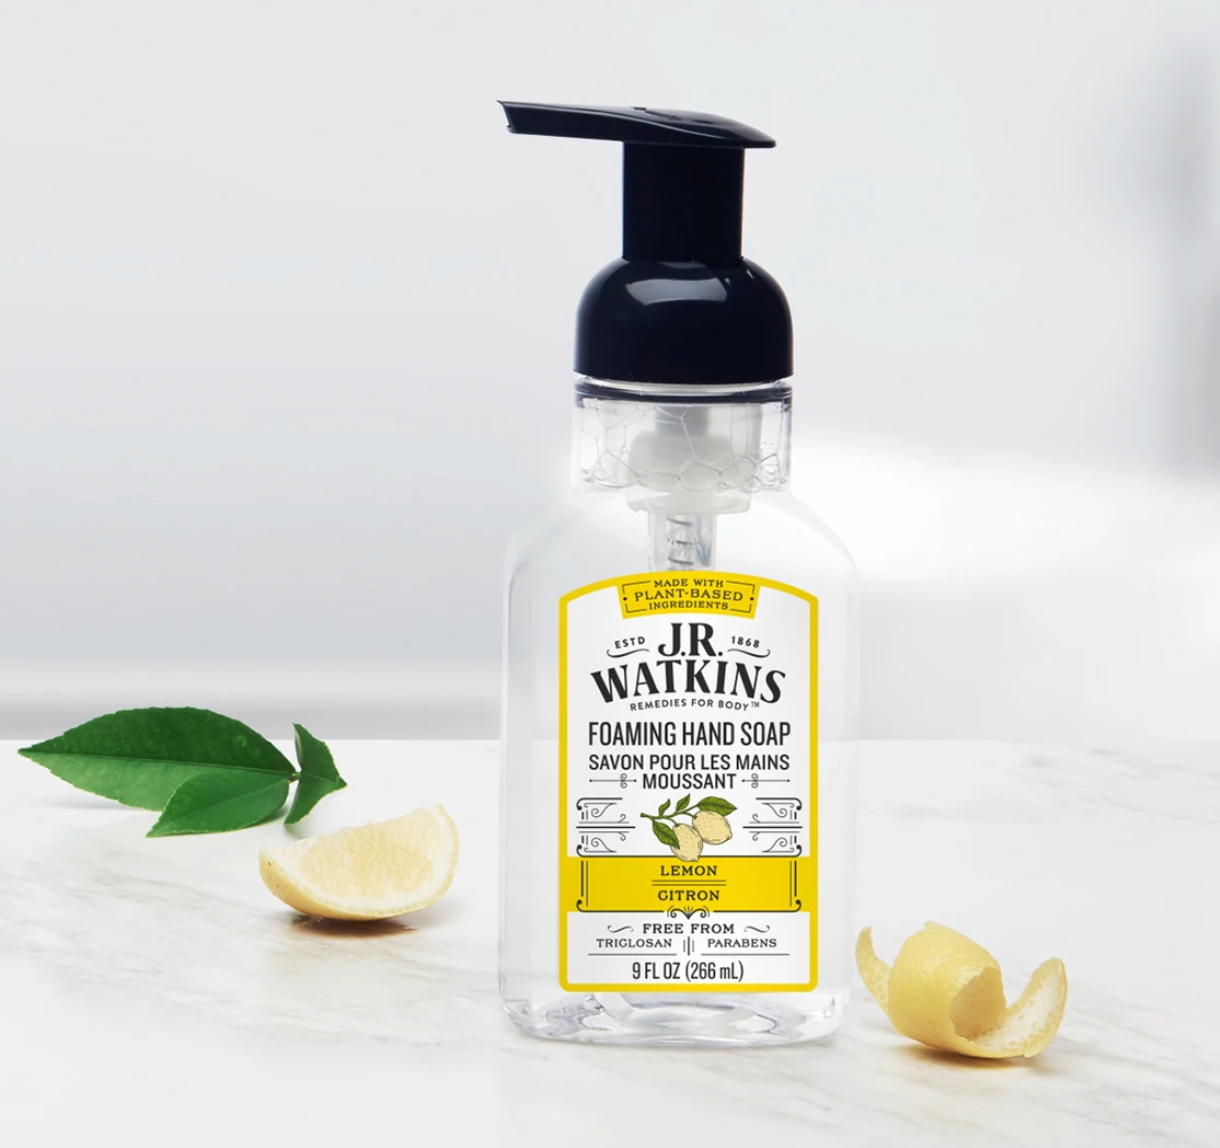 Lemon Foaming Hand Soap by J.R. Watkins 266ml